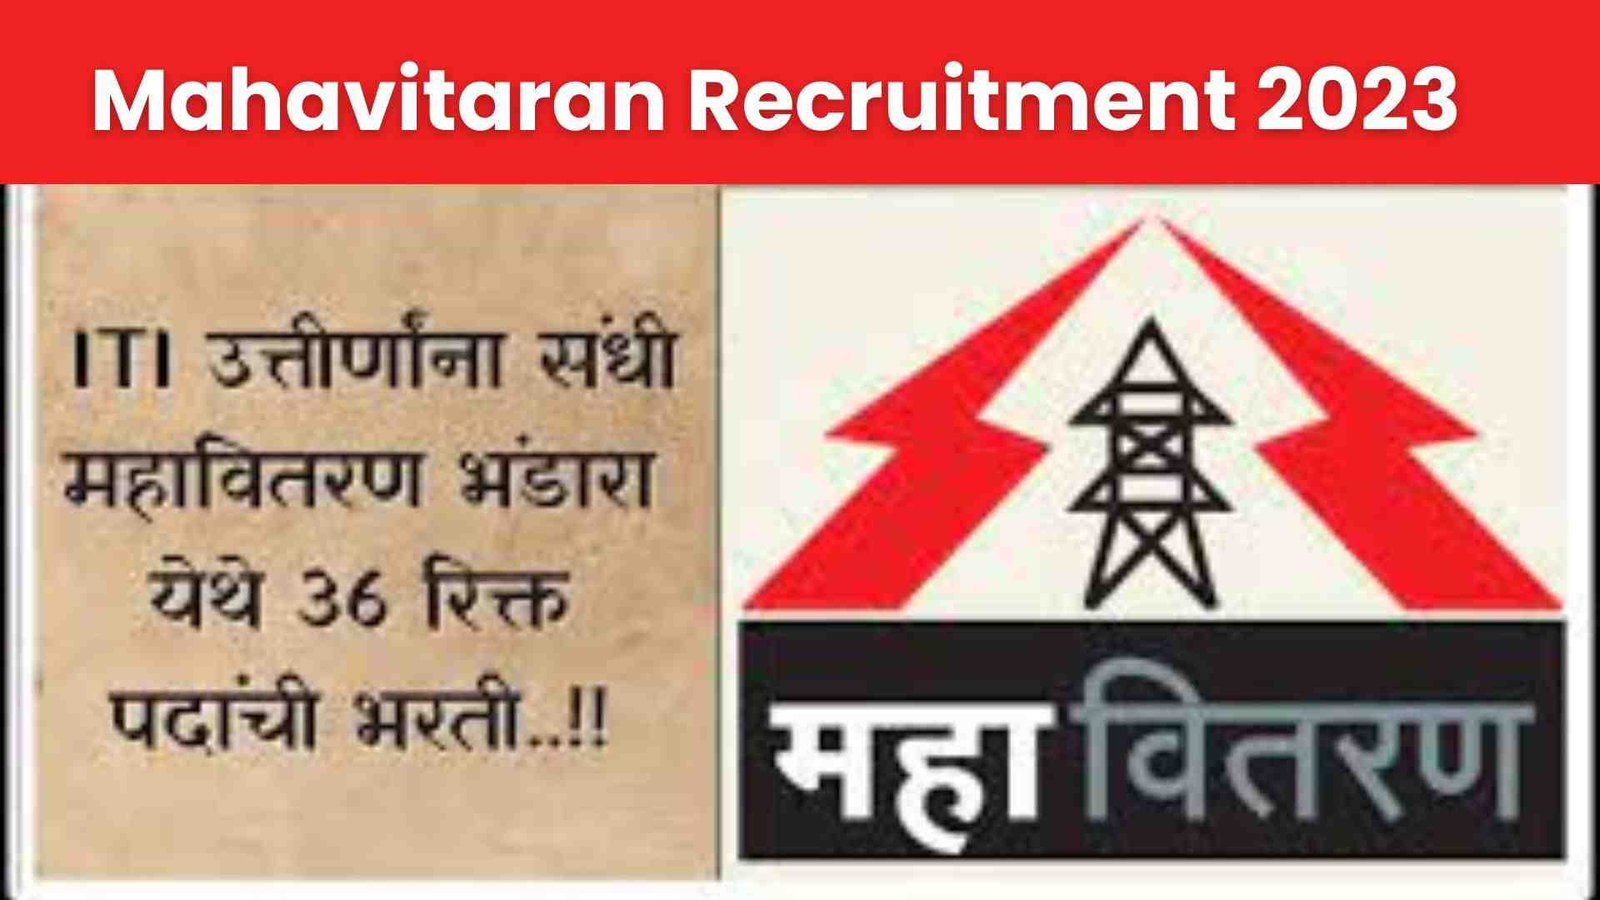 Mahavitaran Recruitment 2023